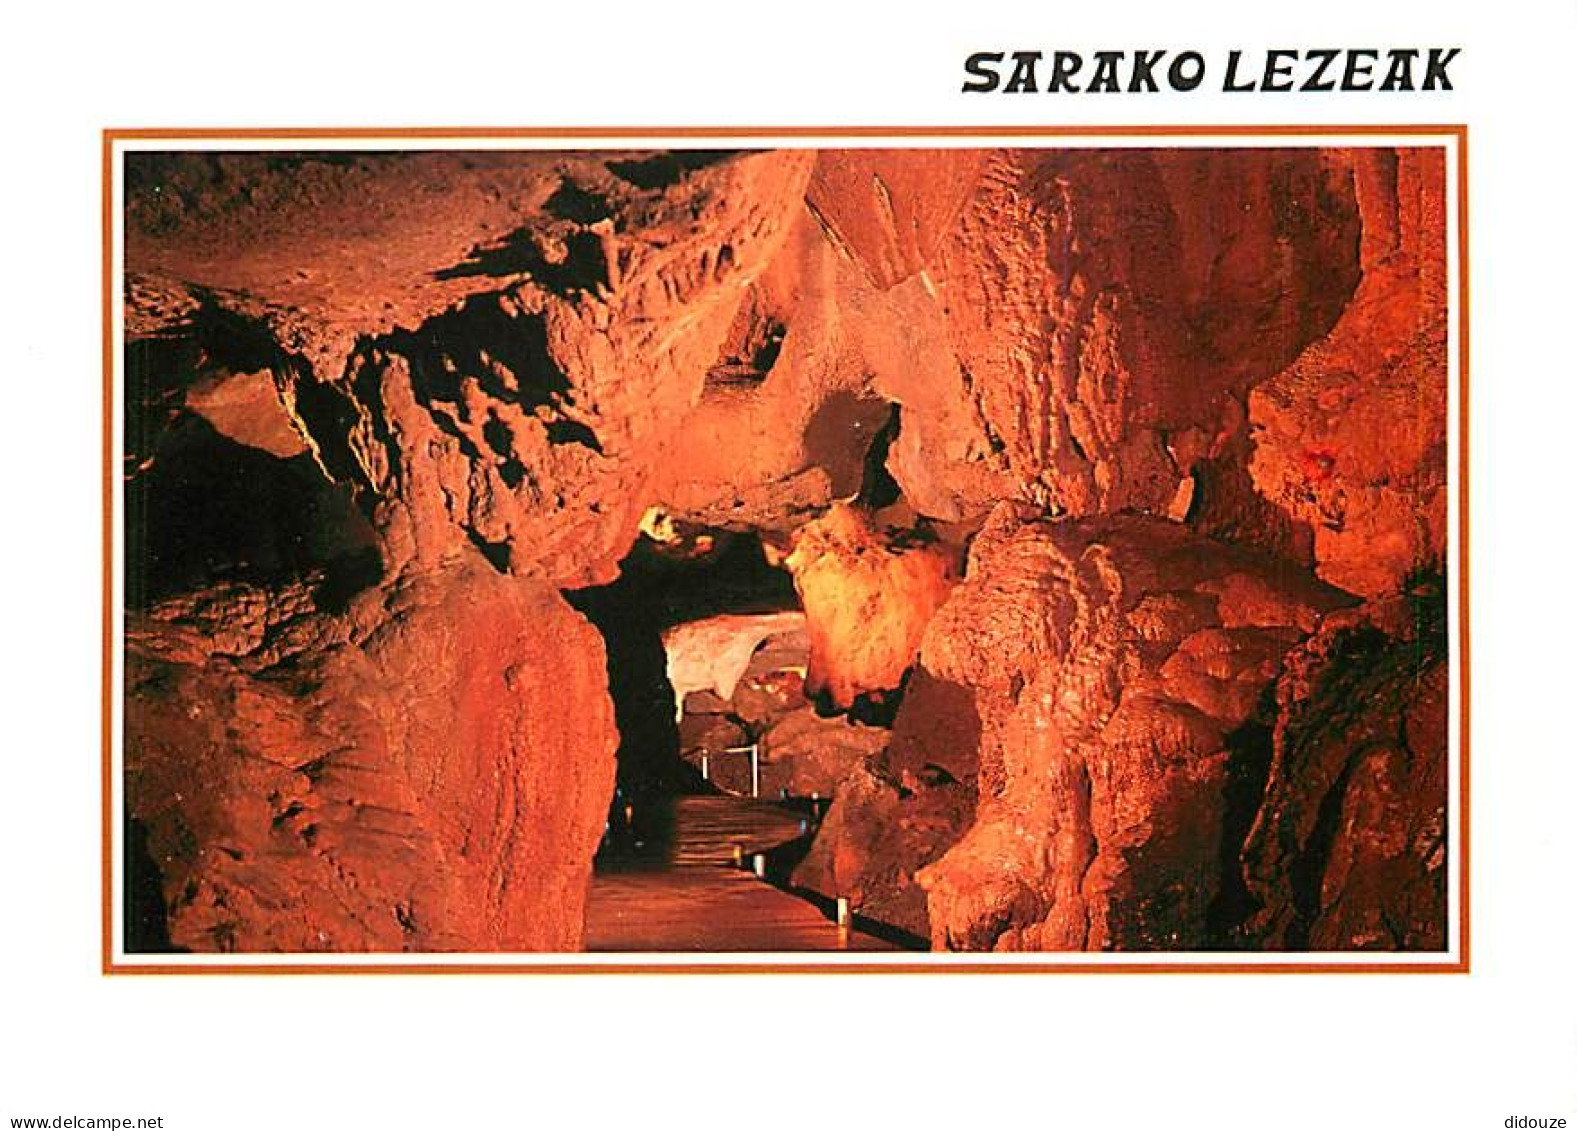 64 - Sare - Sarako Lezeak - Grottes De Sare En Pays Basque - Le Grand Méandre : Ses Sculptures Naturelles - Spéléologie  - Sare